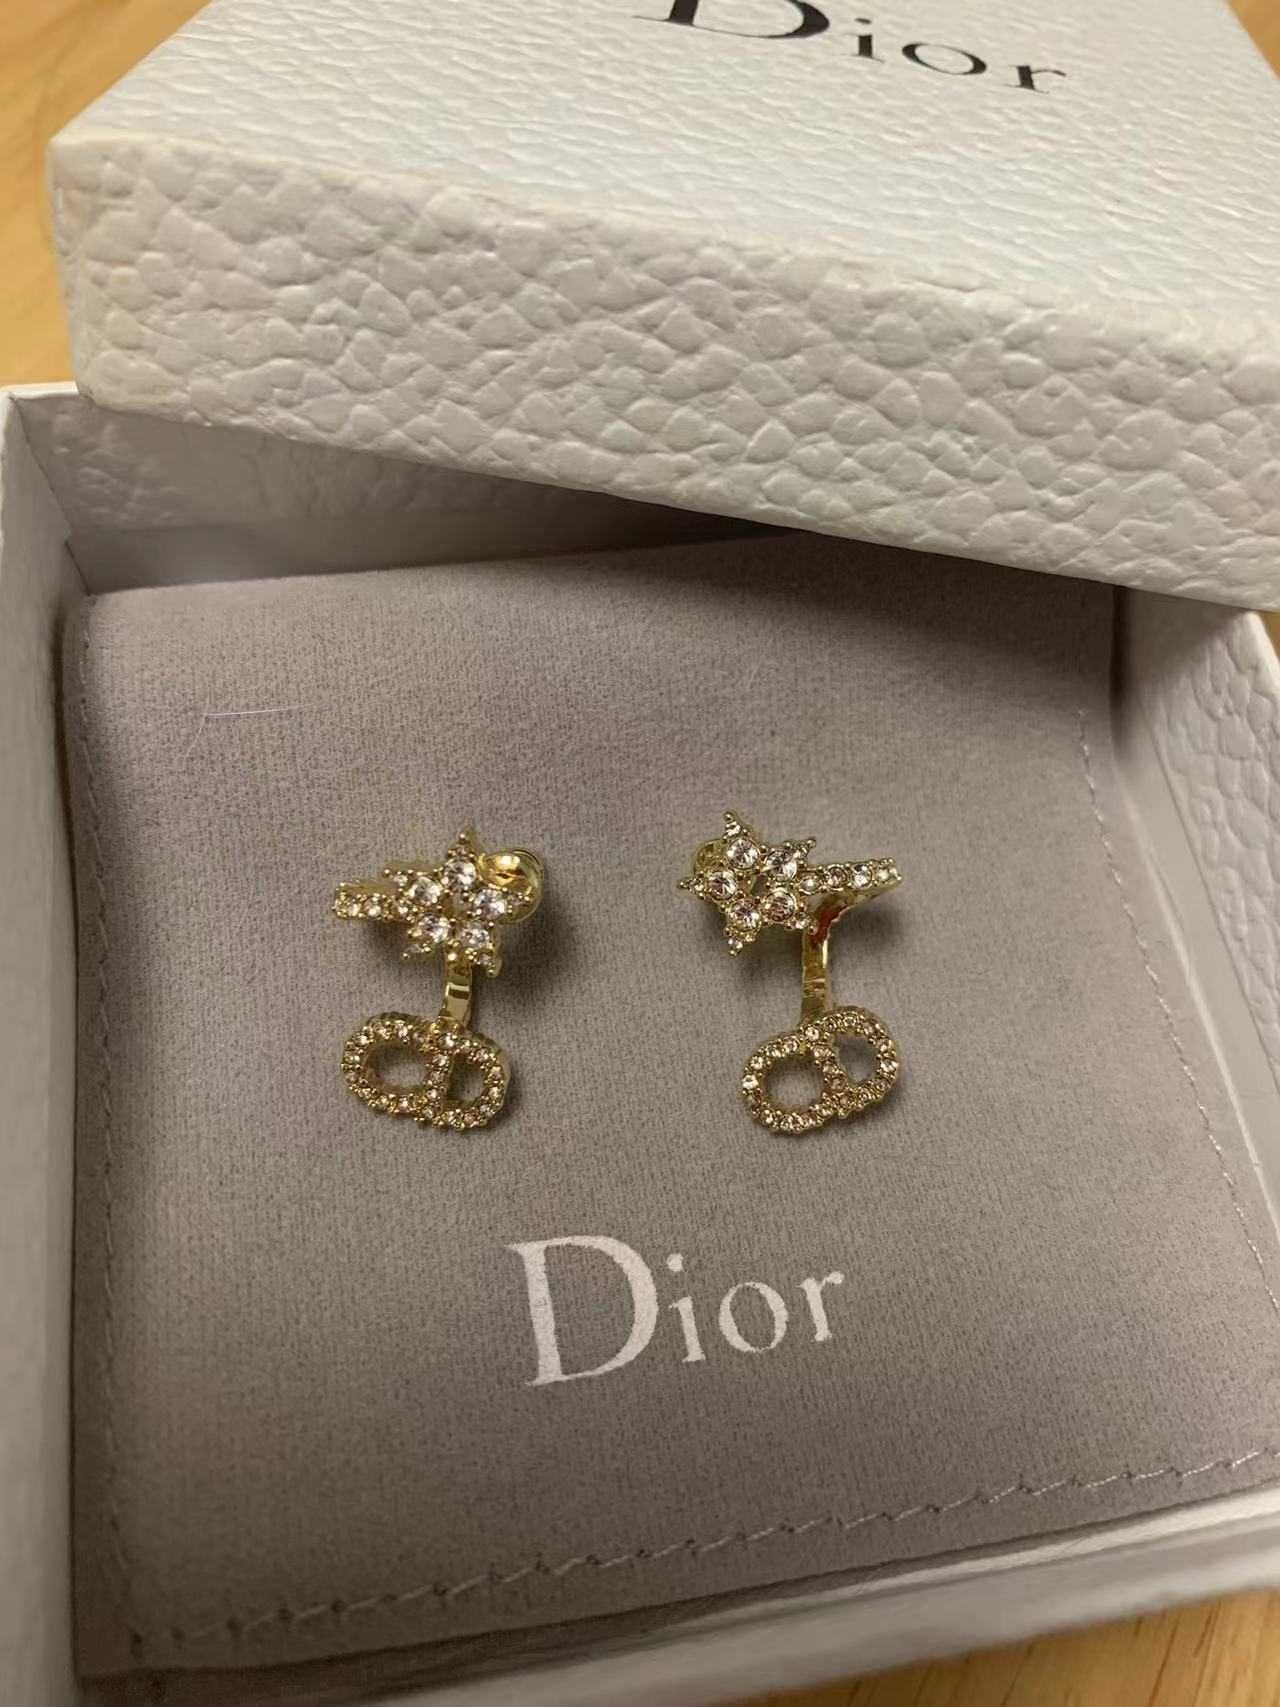 Exquisite earrings